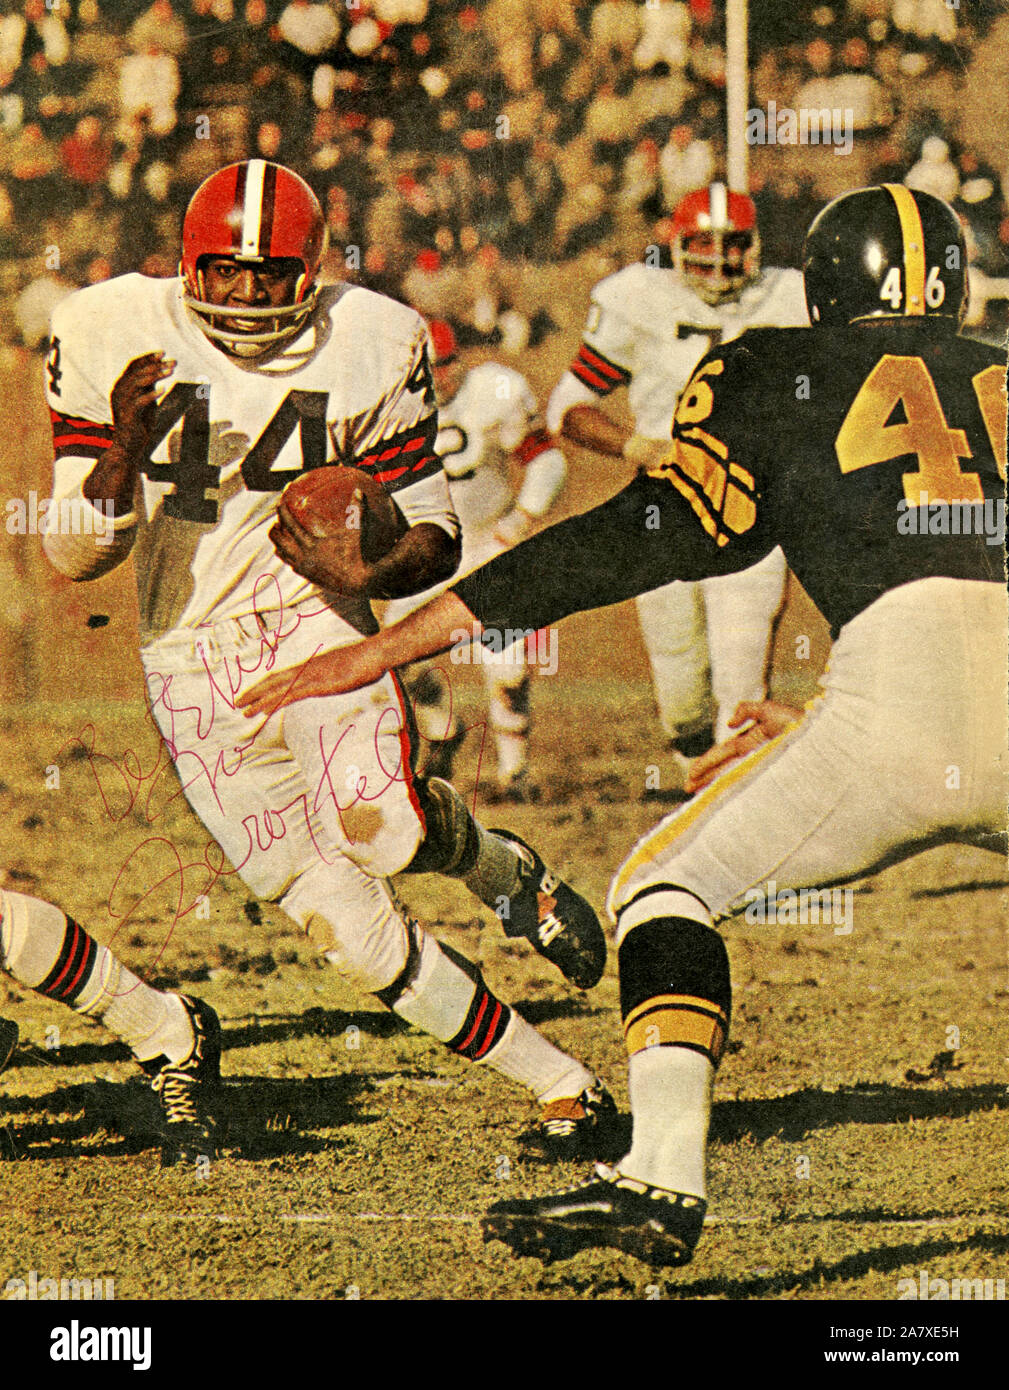 Leroy Kelly était une star en marche arrière avec la NFL Browns de Cleveland dans les années 60. Banque D'Images